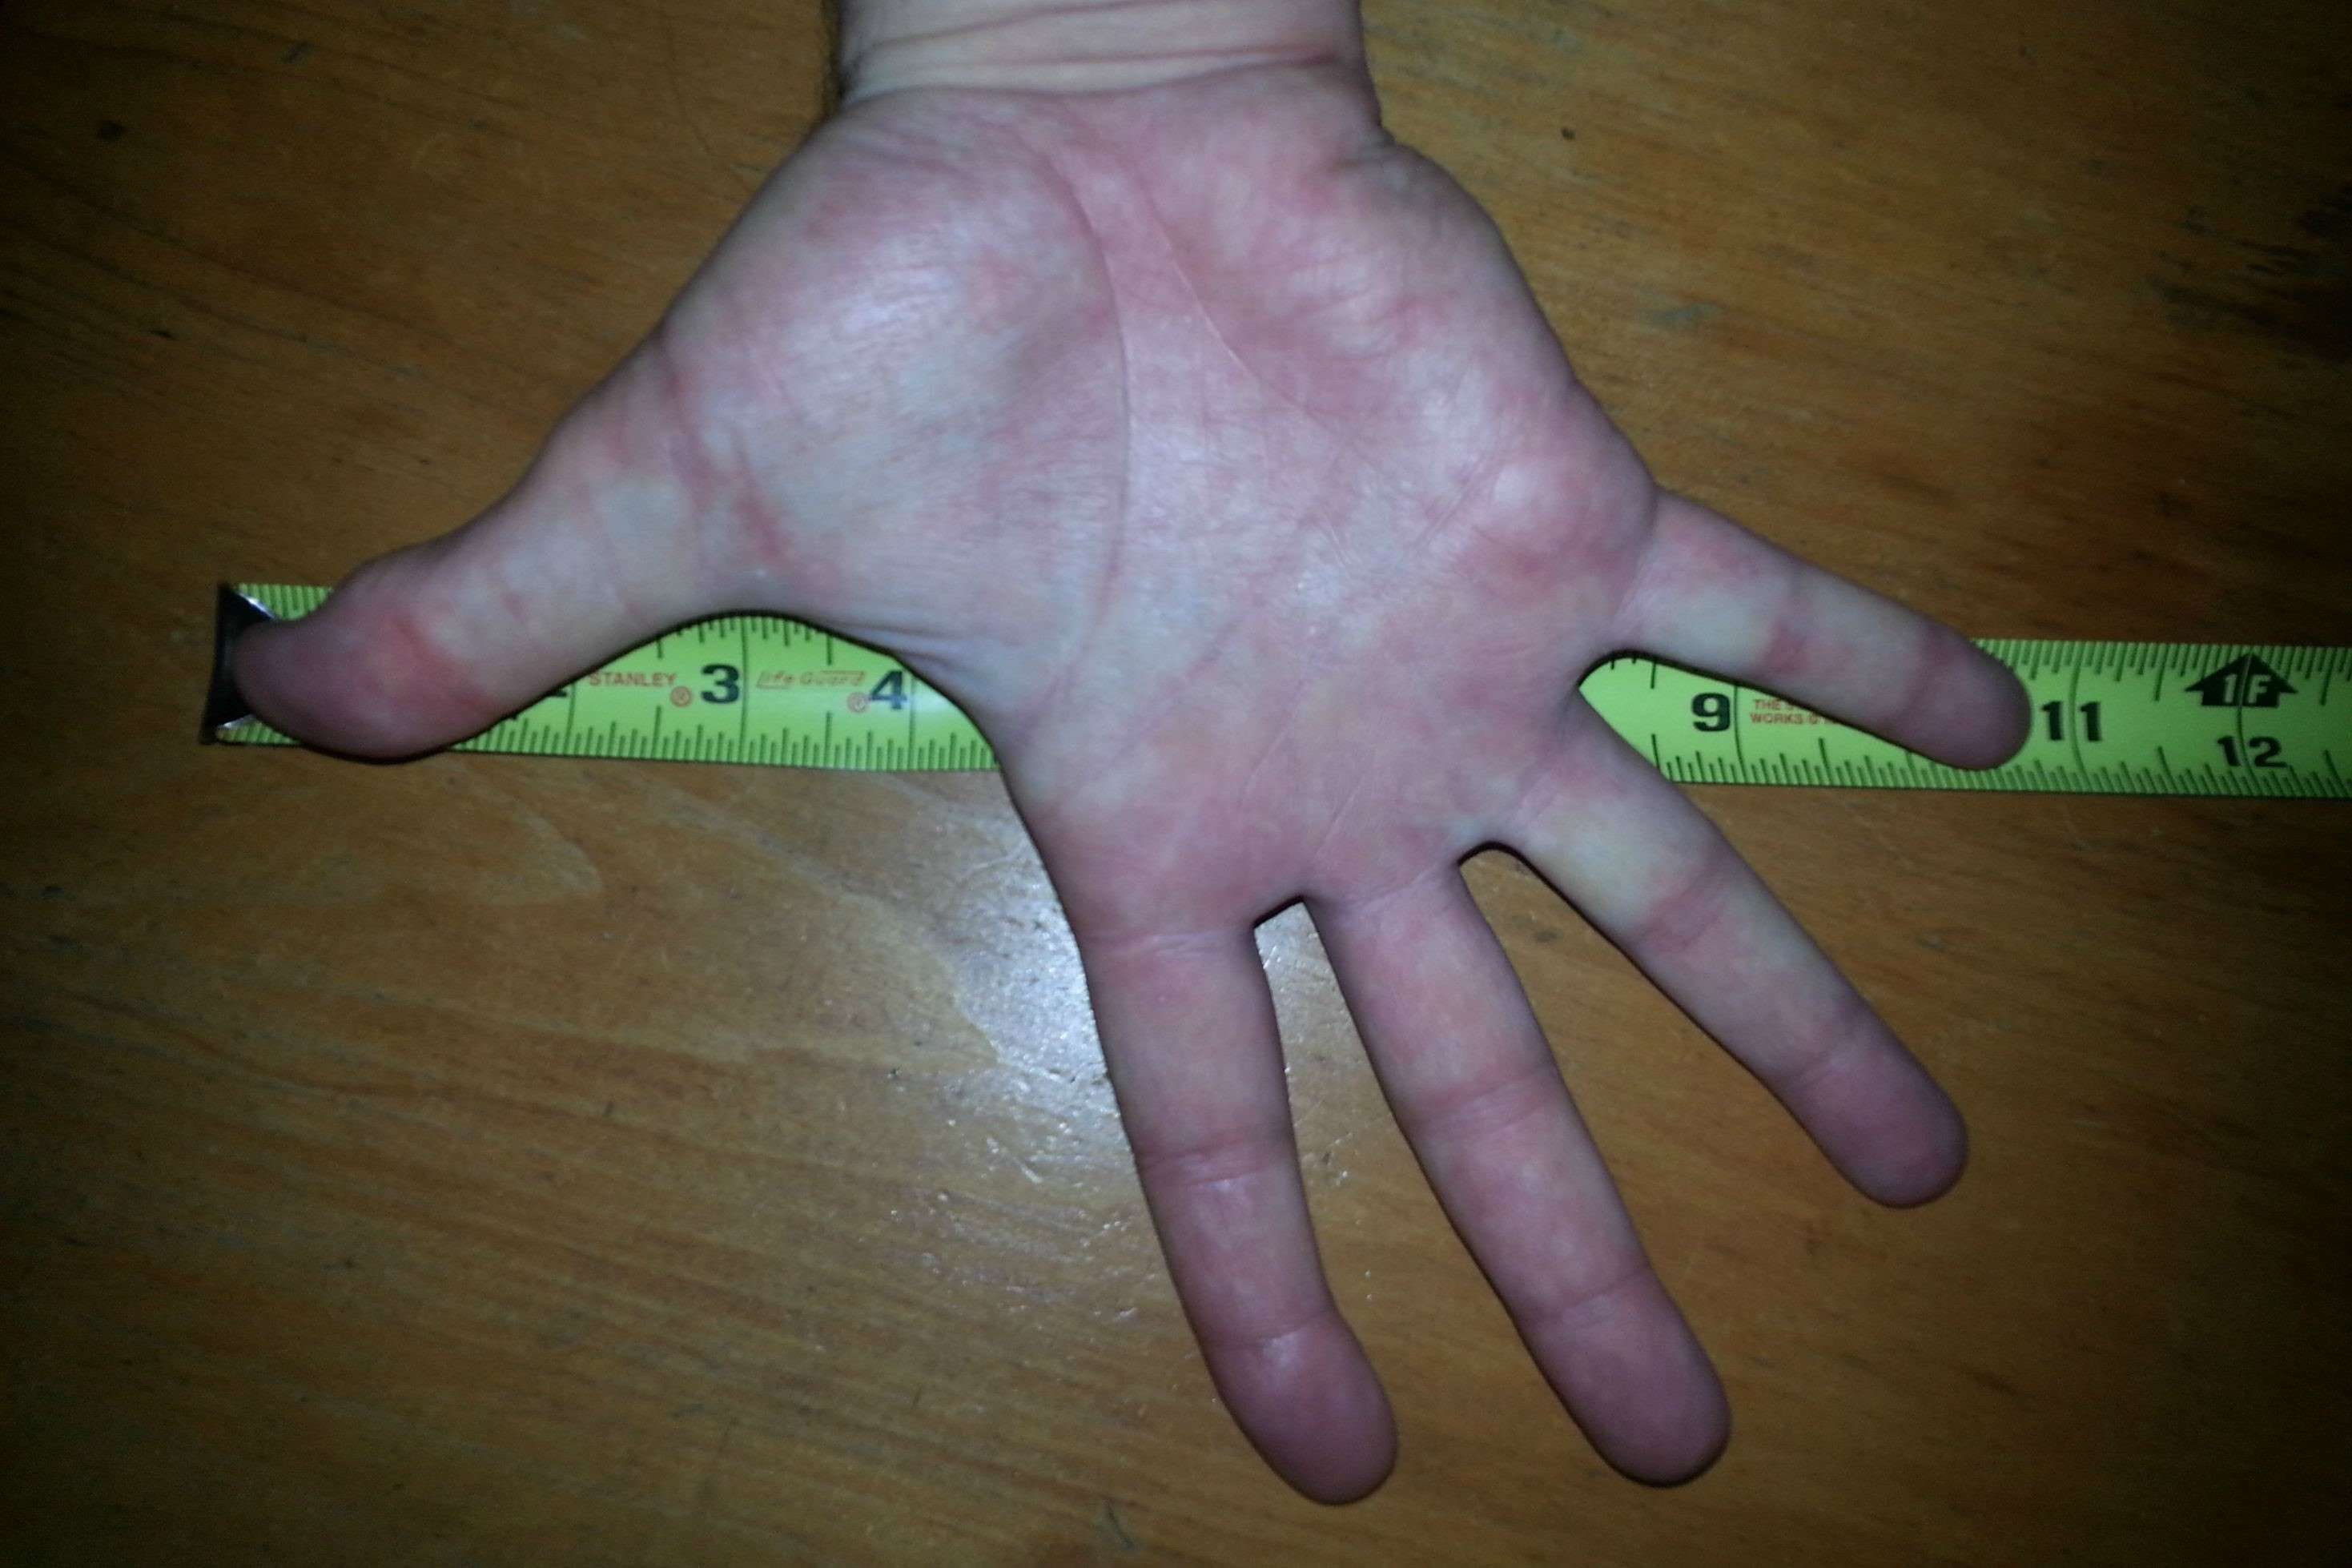 How To Get Bigger Hands